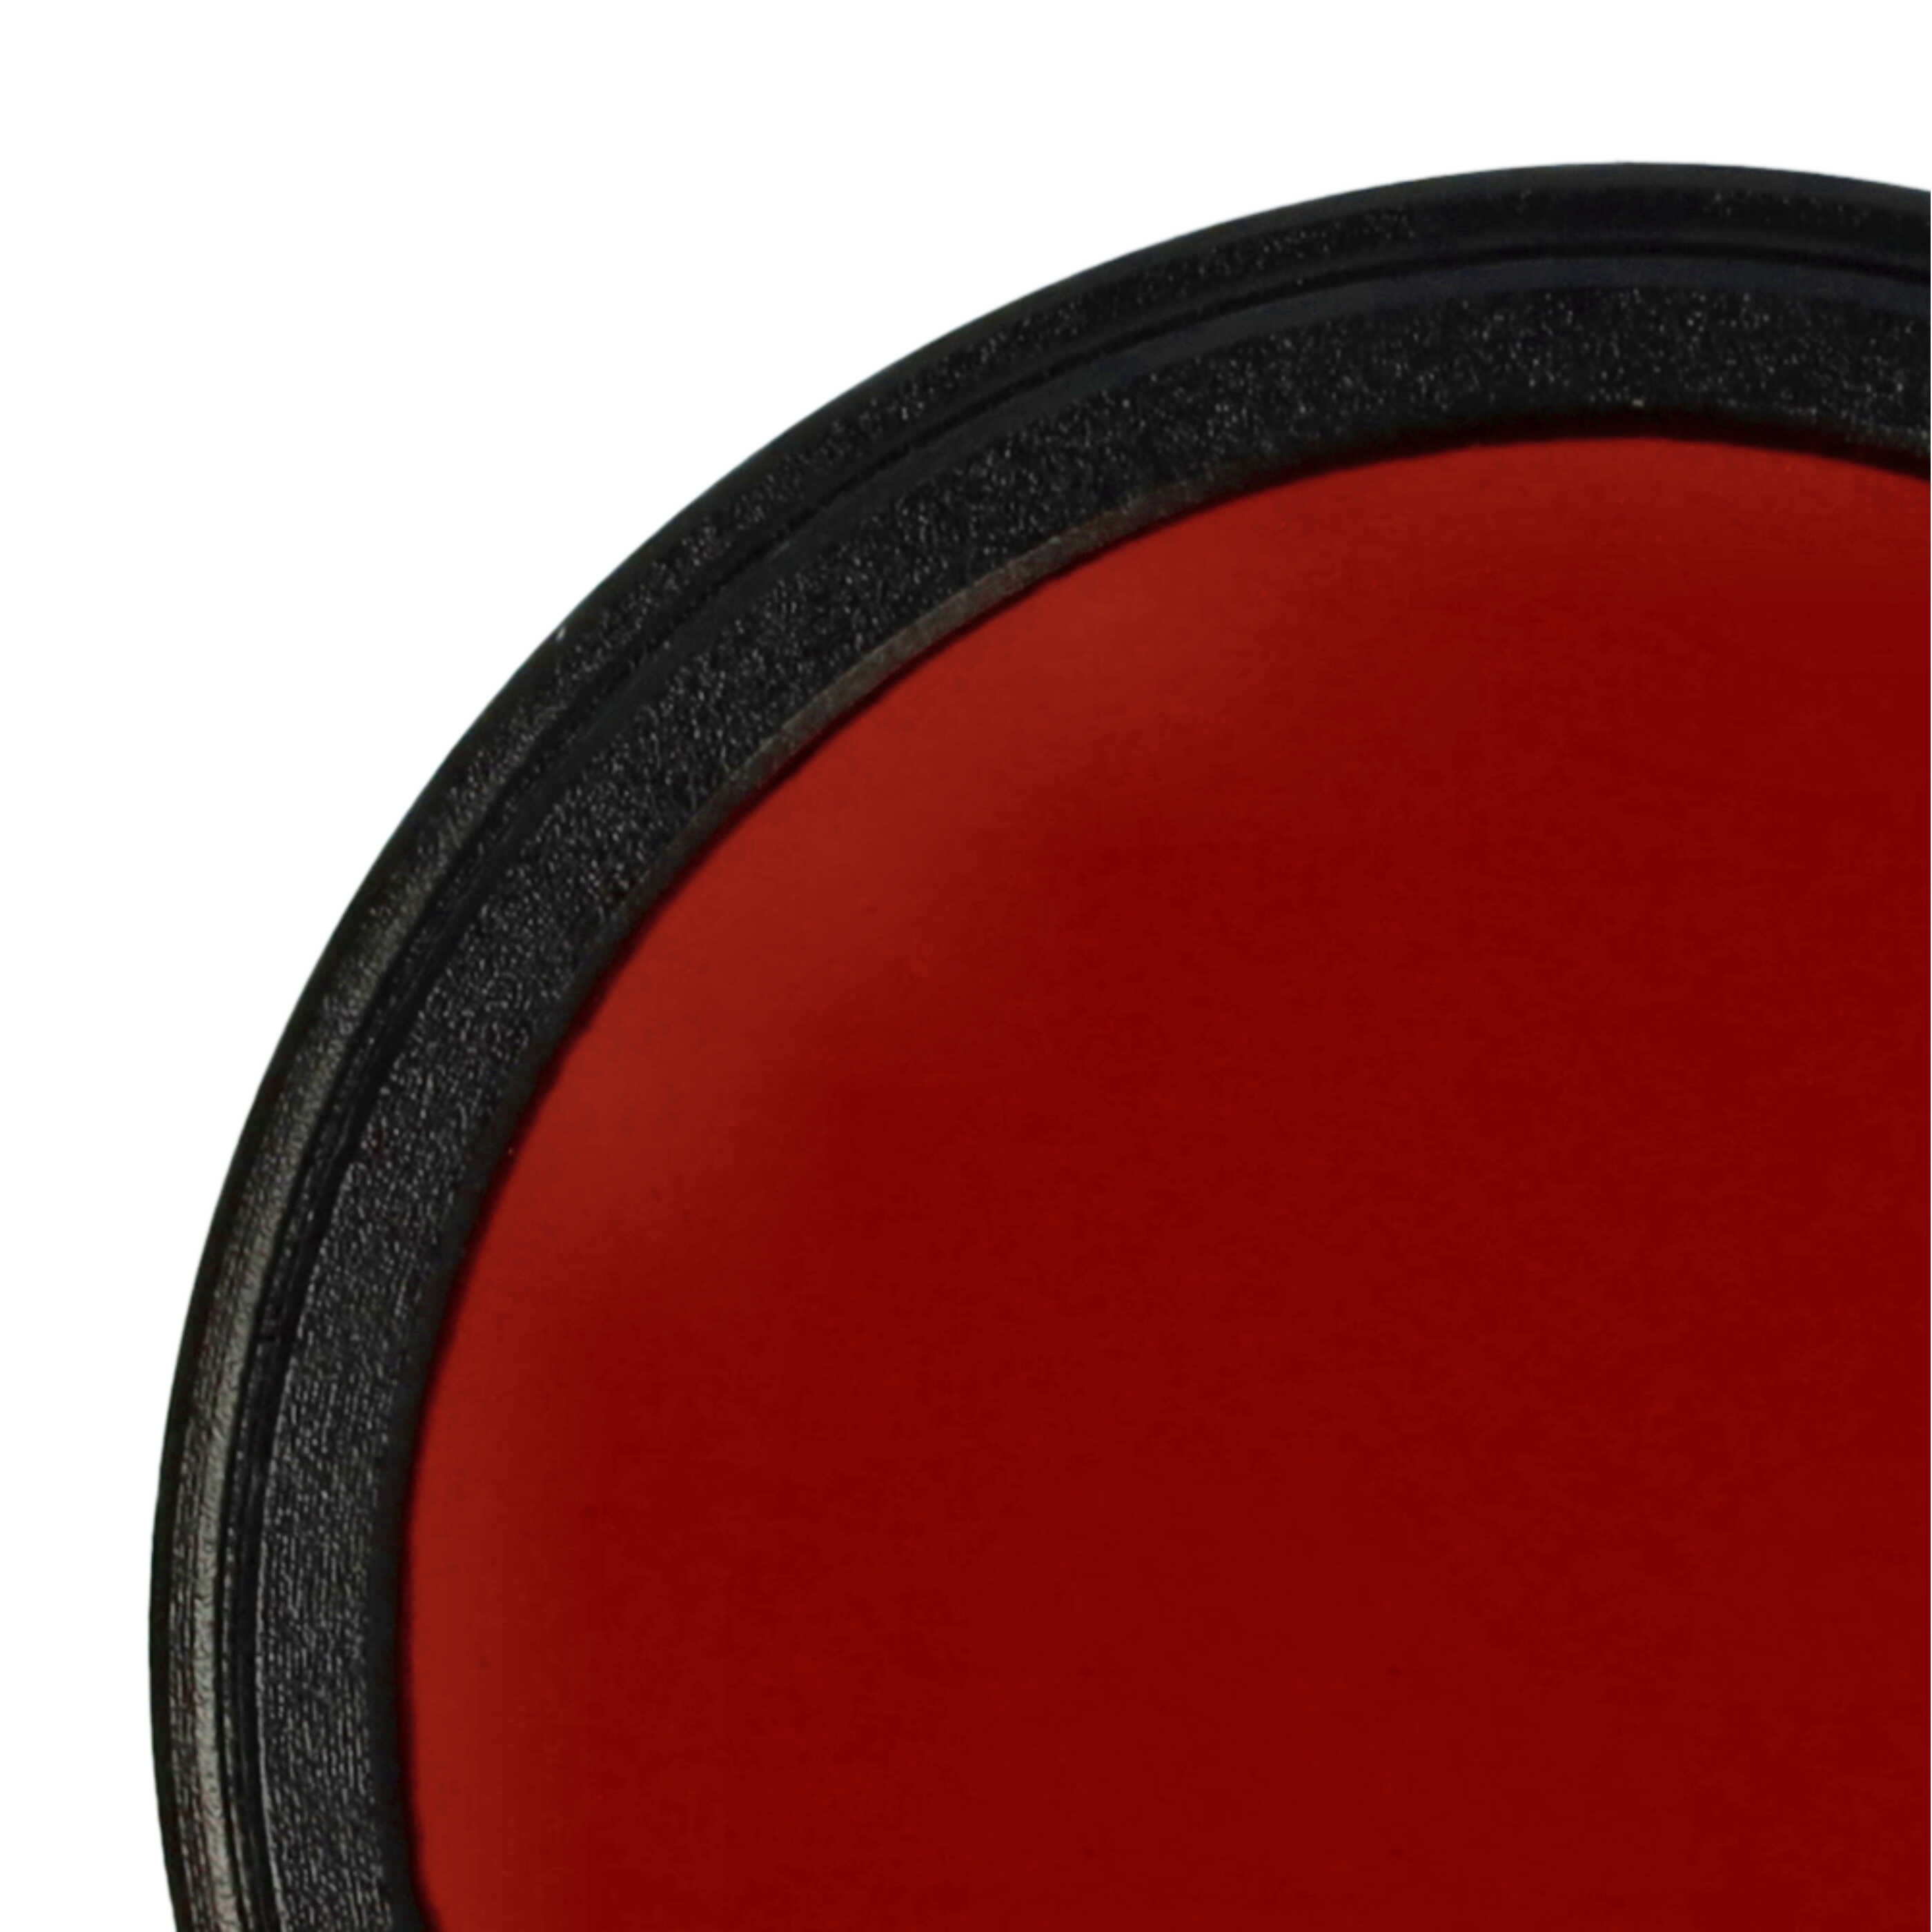 Filtro de color para objetivo de cámara con rosca de filtro de 37 mm - Filtro rojo